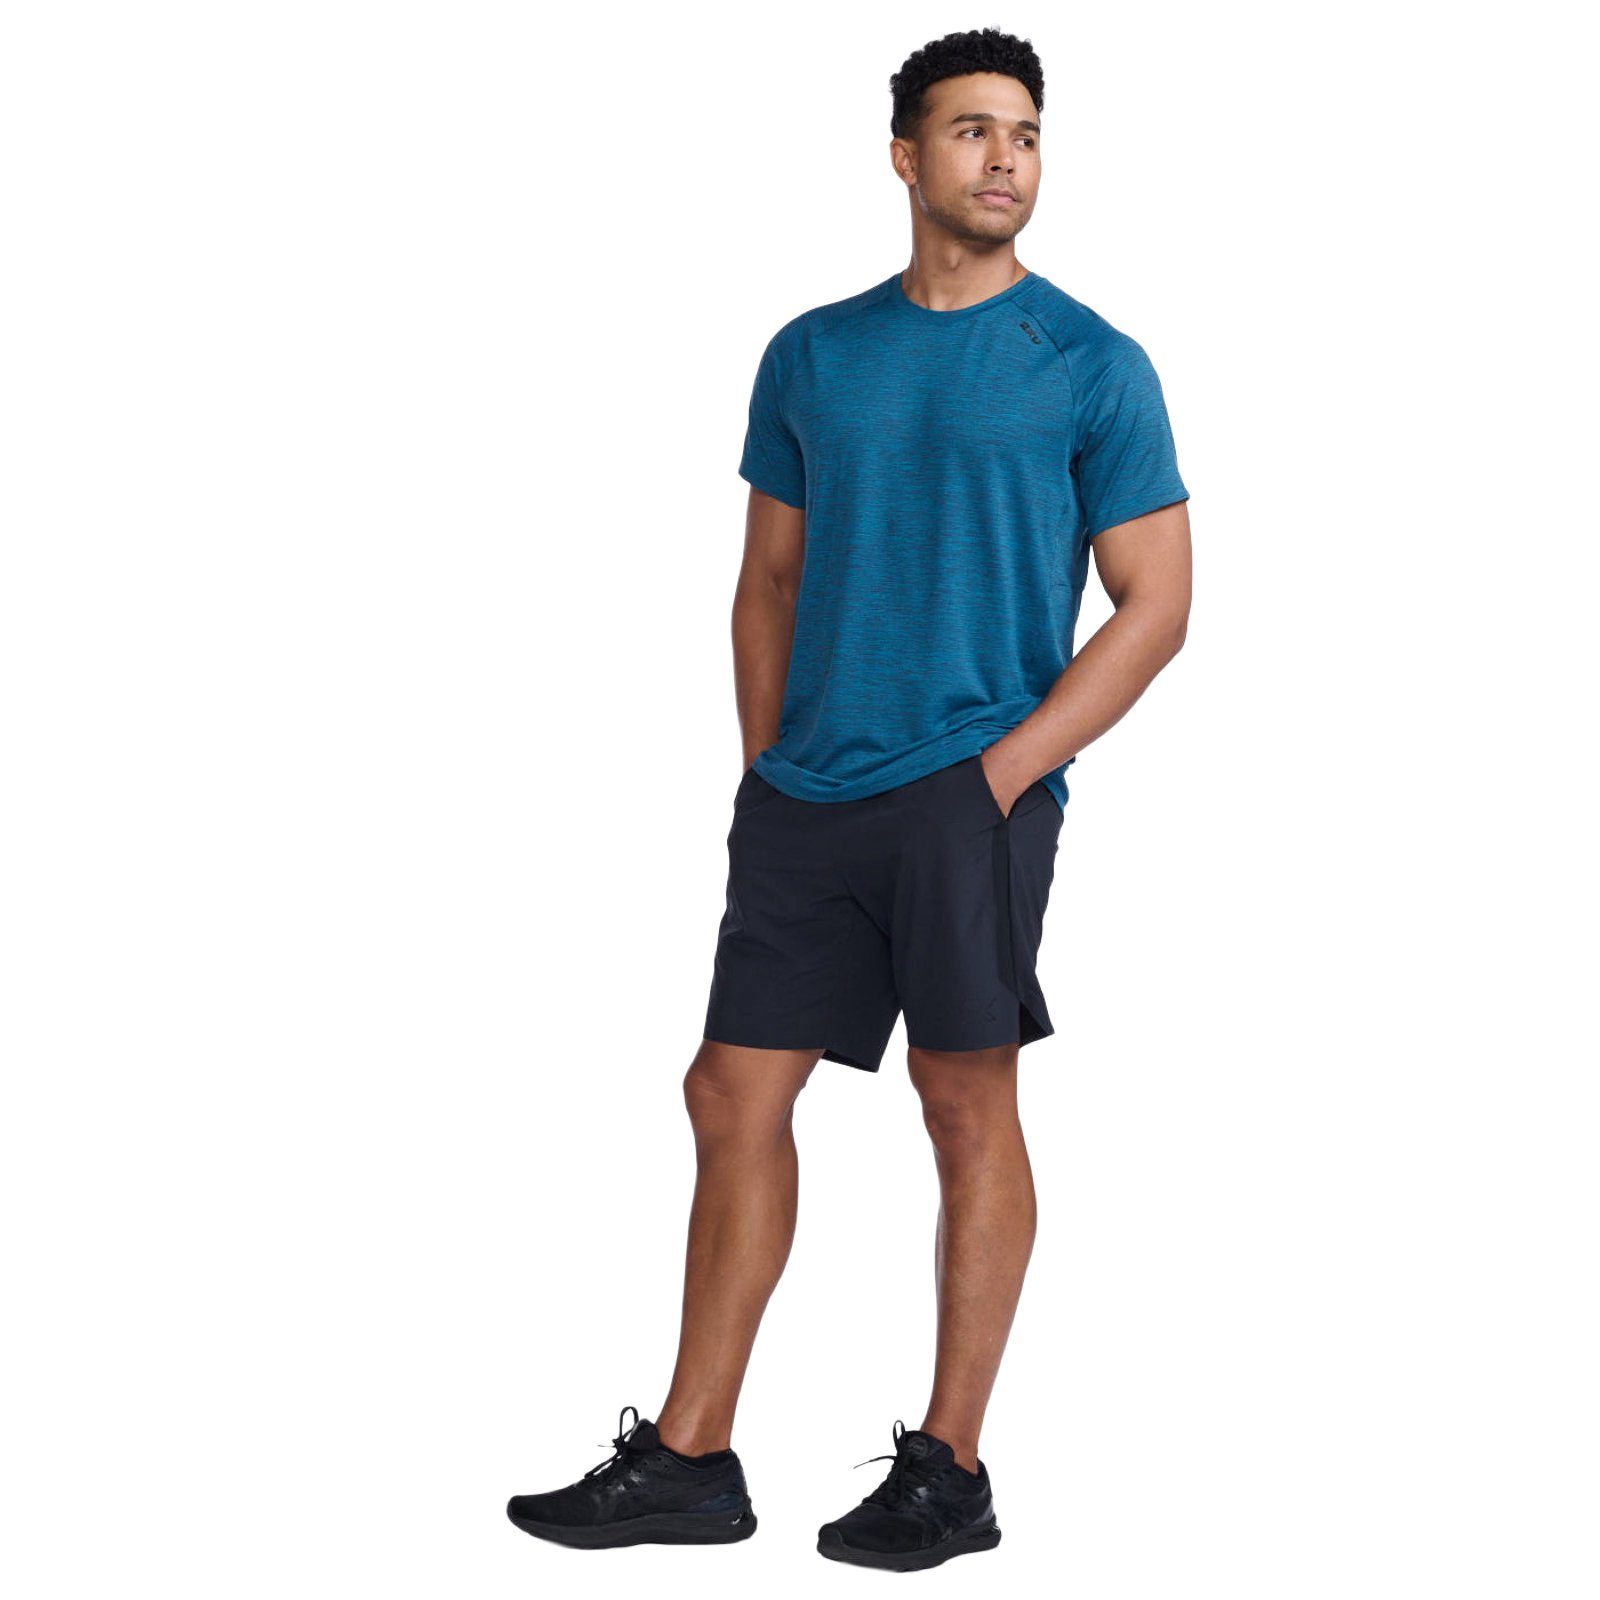 Celestial/Black Laufshirt Trainingsshirt Motion und Material strapazierfähiges Tee 2xU Bewegungsfreiheit